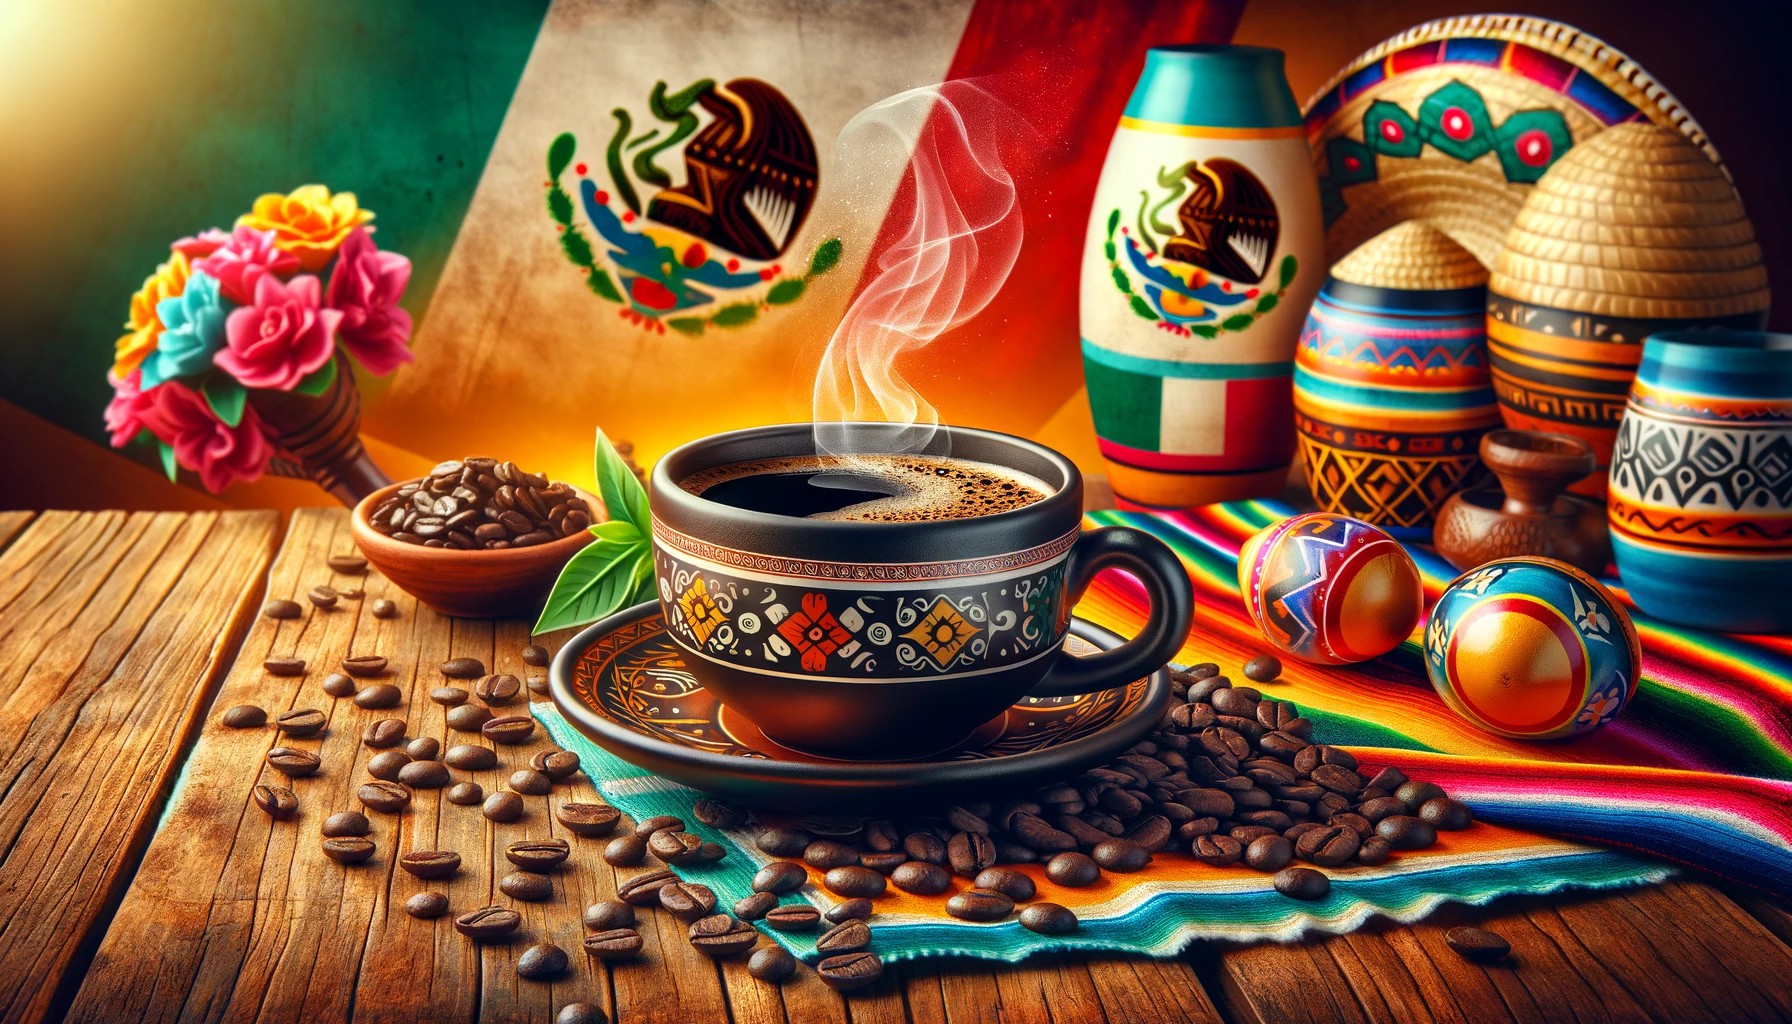 墨西哥咖啡 阿拉比卡 波旁 精品咖啡豆 日曬處理 水洗 Mexican coffee Arabica Bourbon specialty coffee beans sun-dried washed